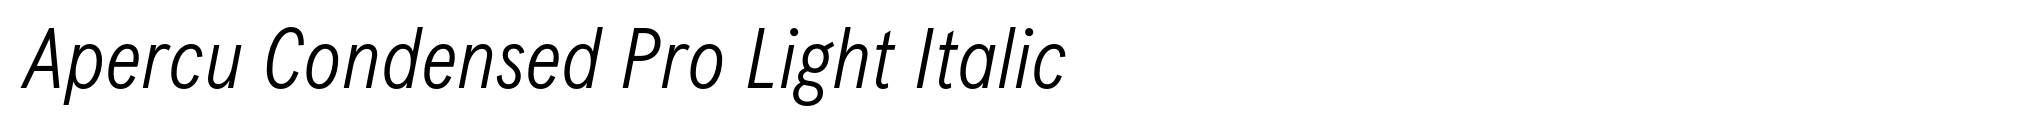 Apercu Condensed Pro Light Italic image